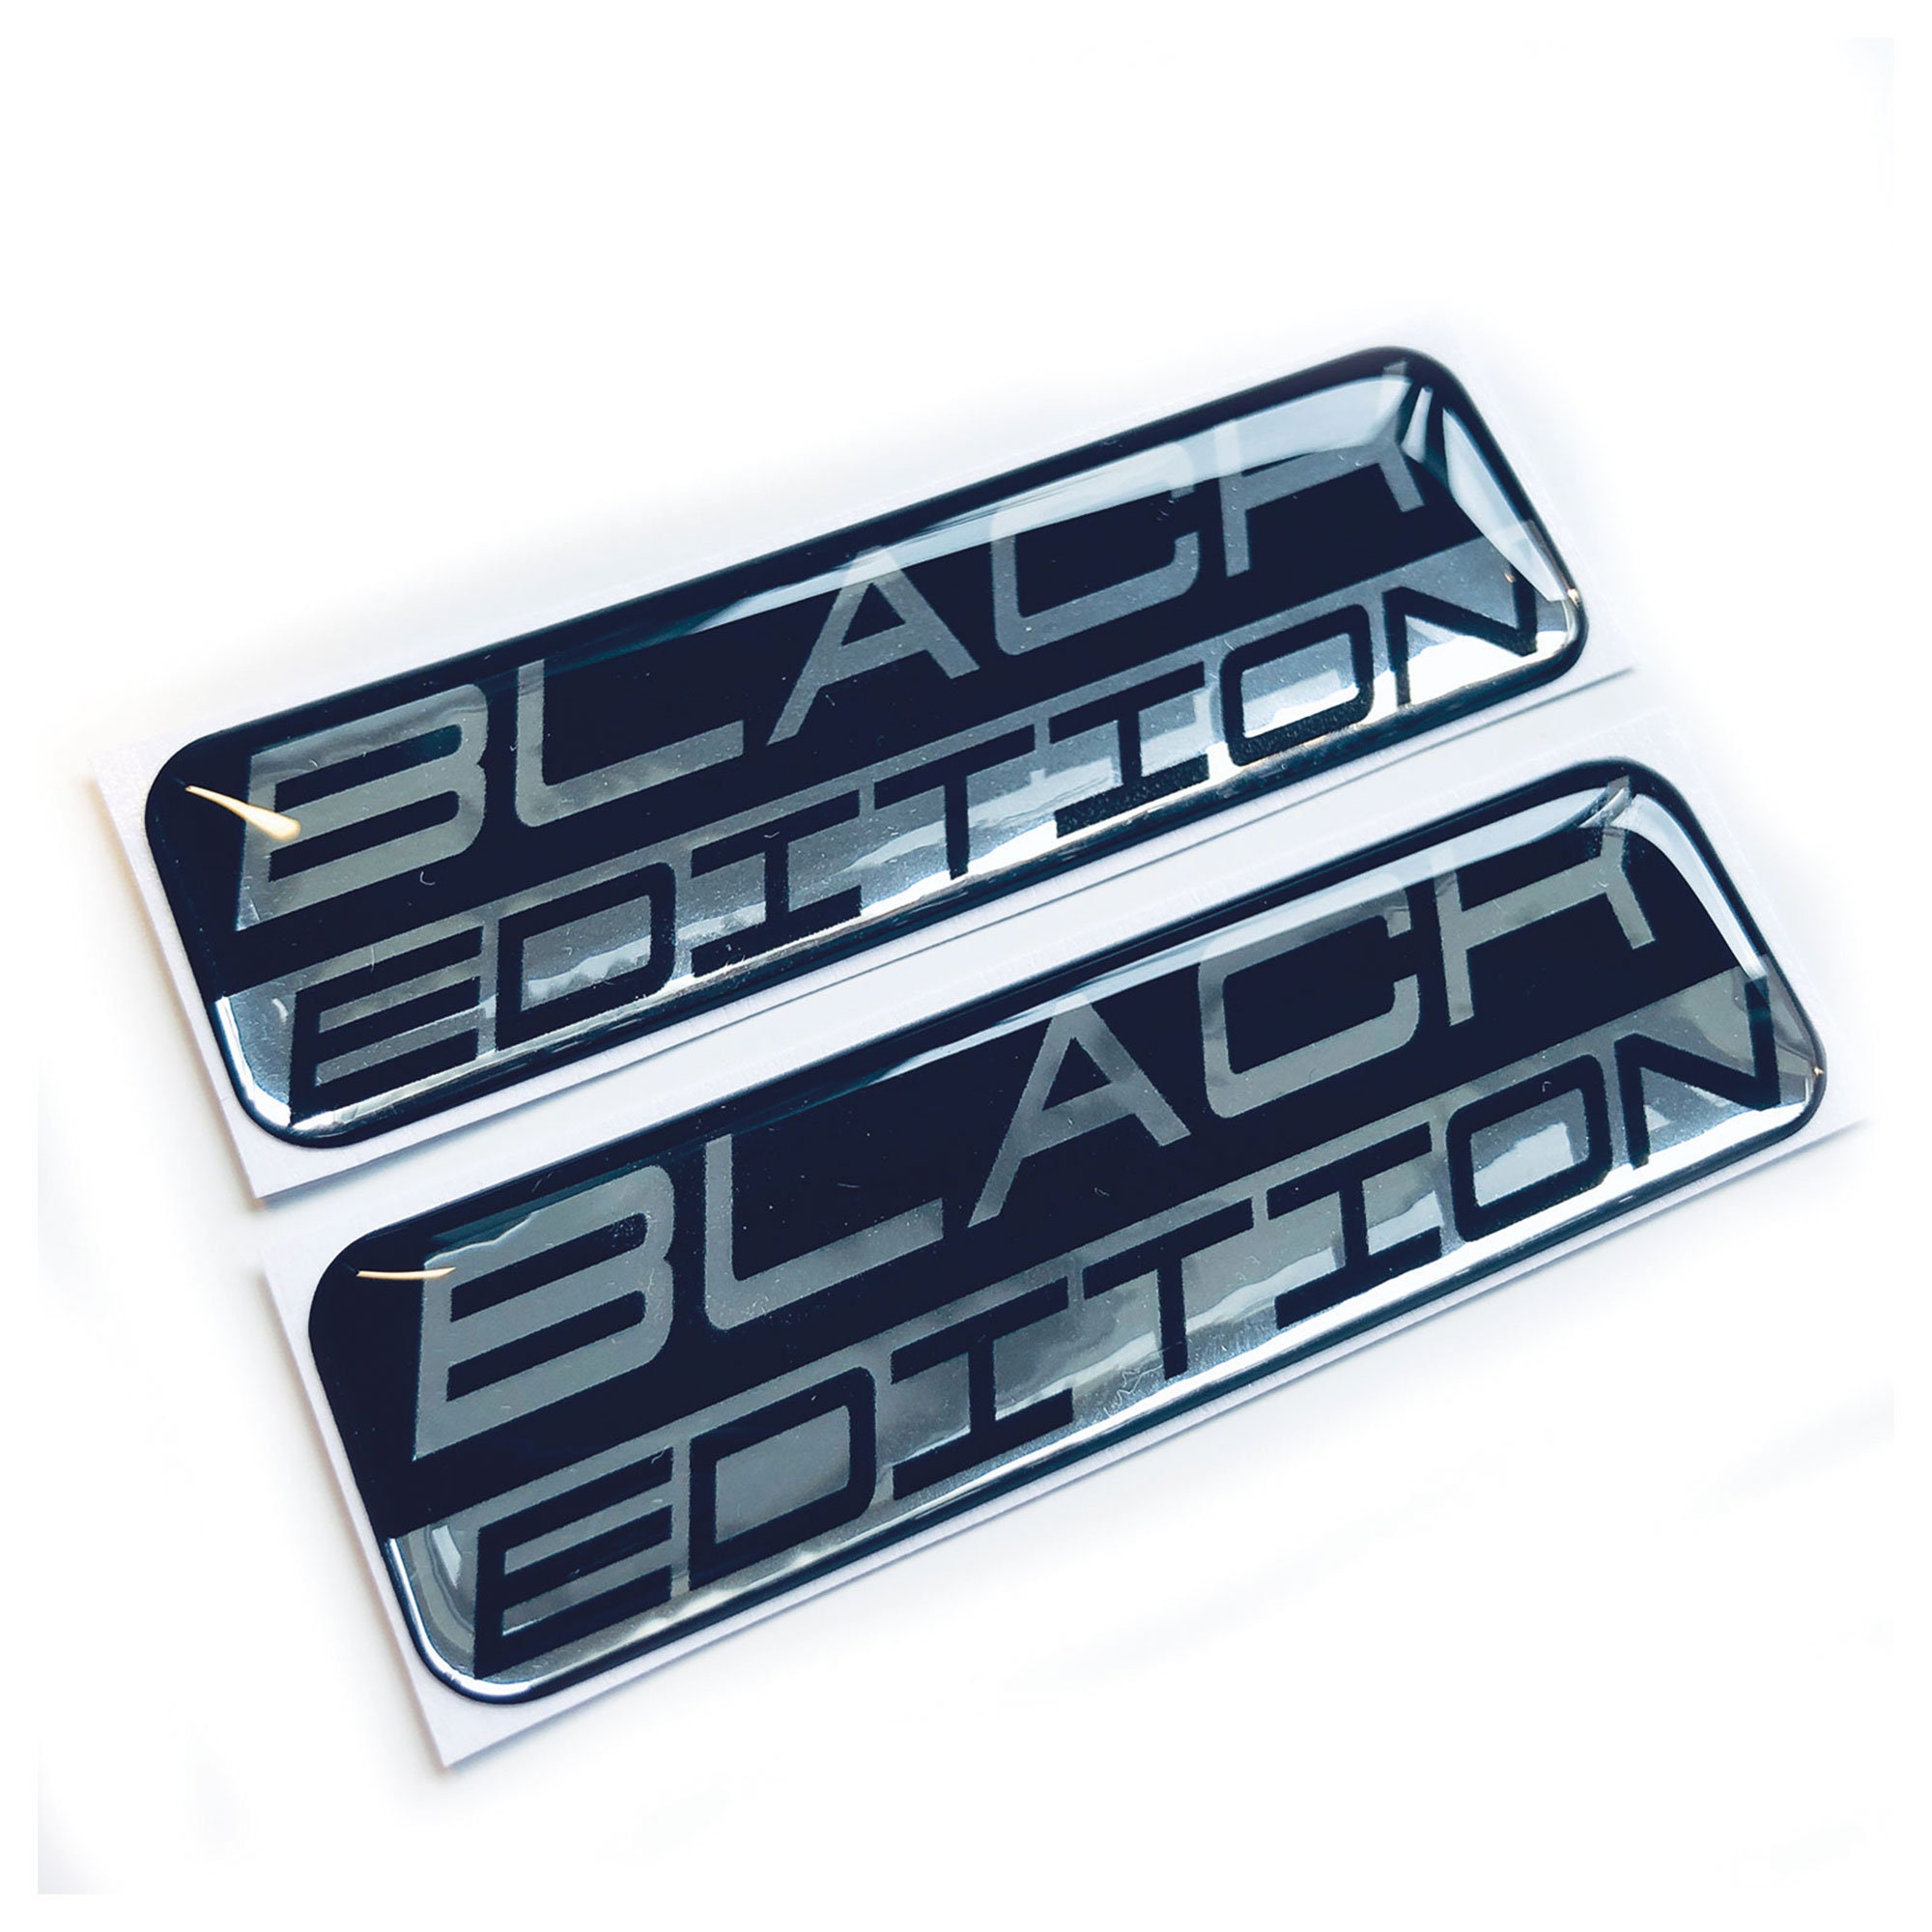 BLACK EDITION Italien Italy 3D Gewölbt Emblem Sticker Aufkleber in